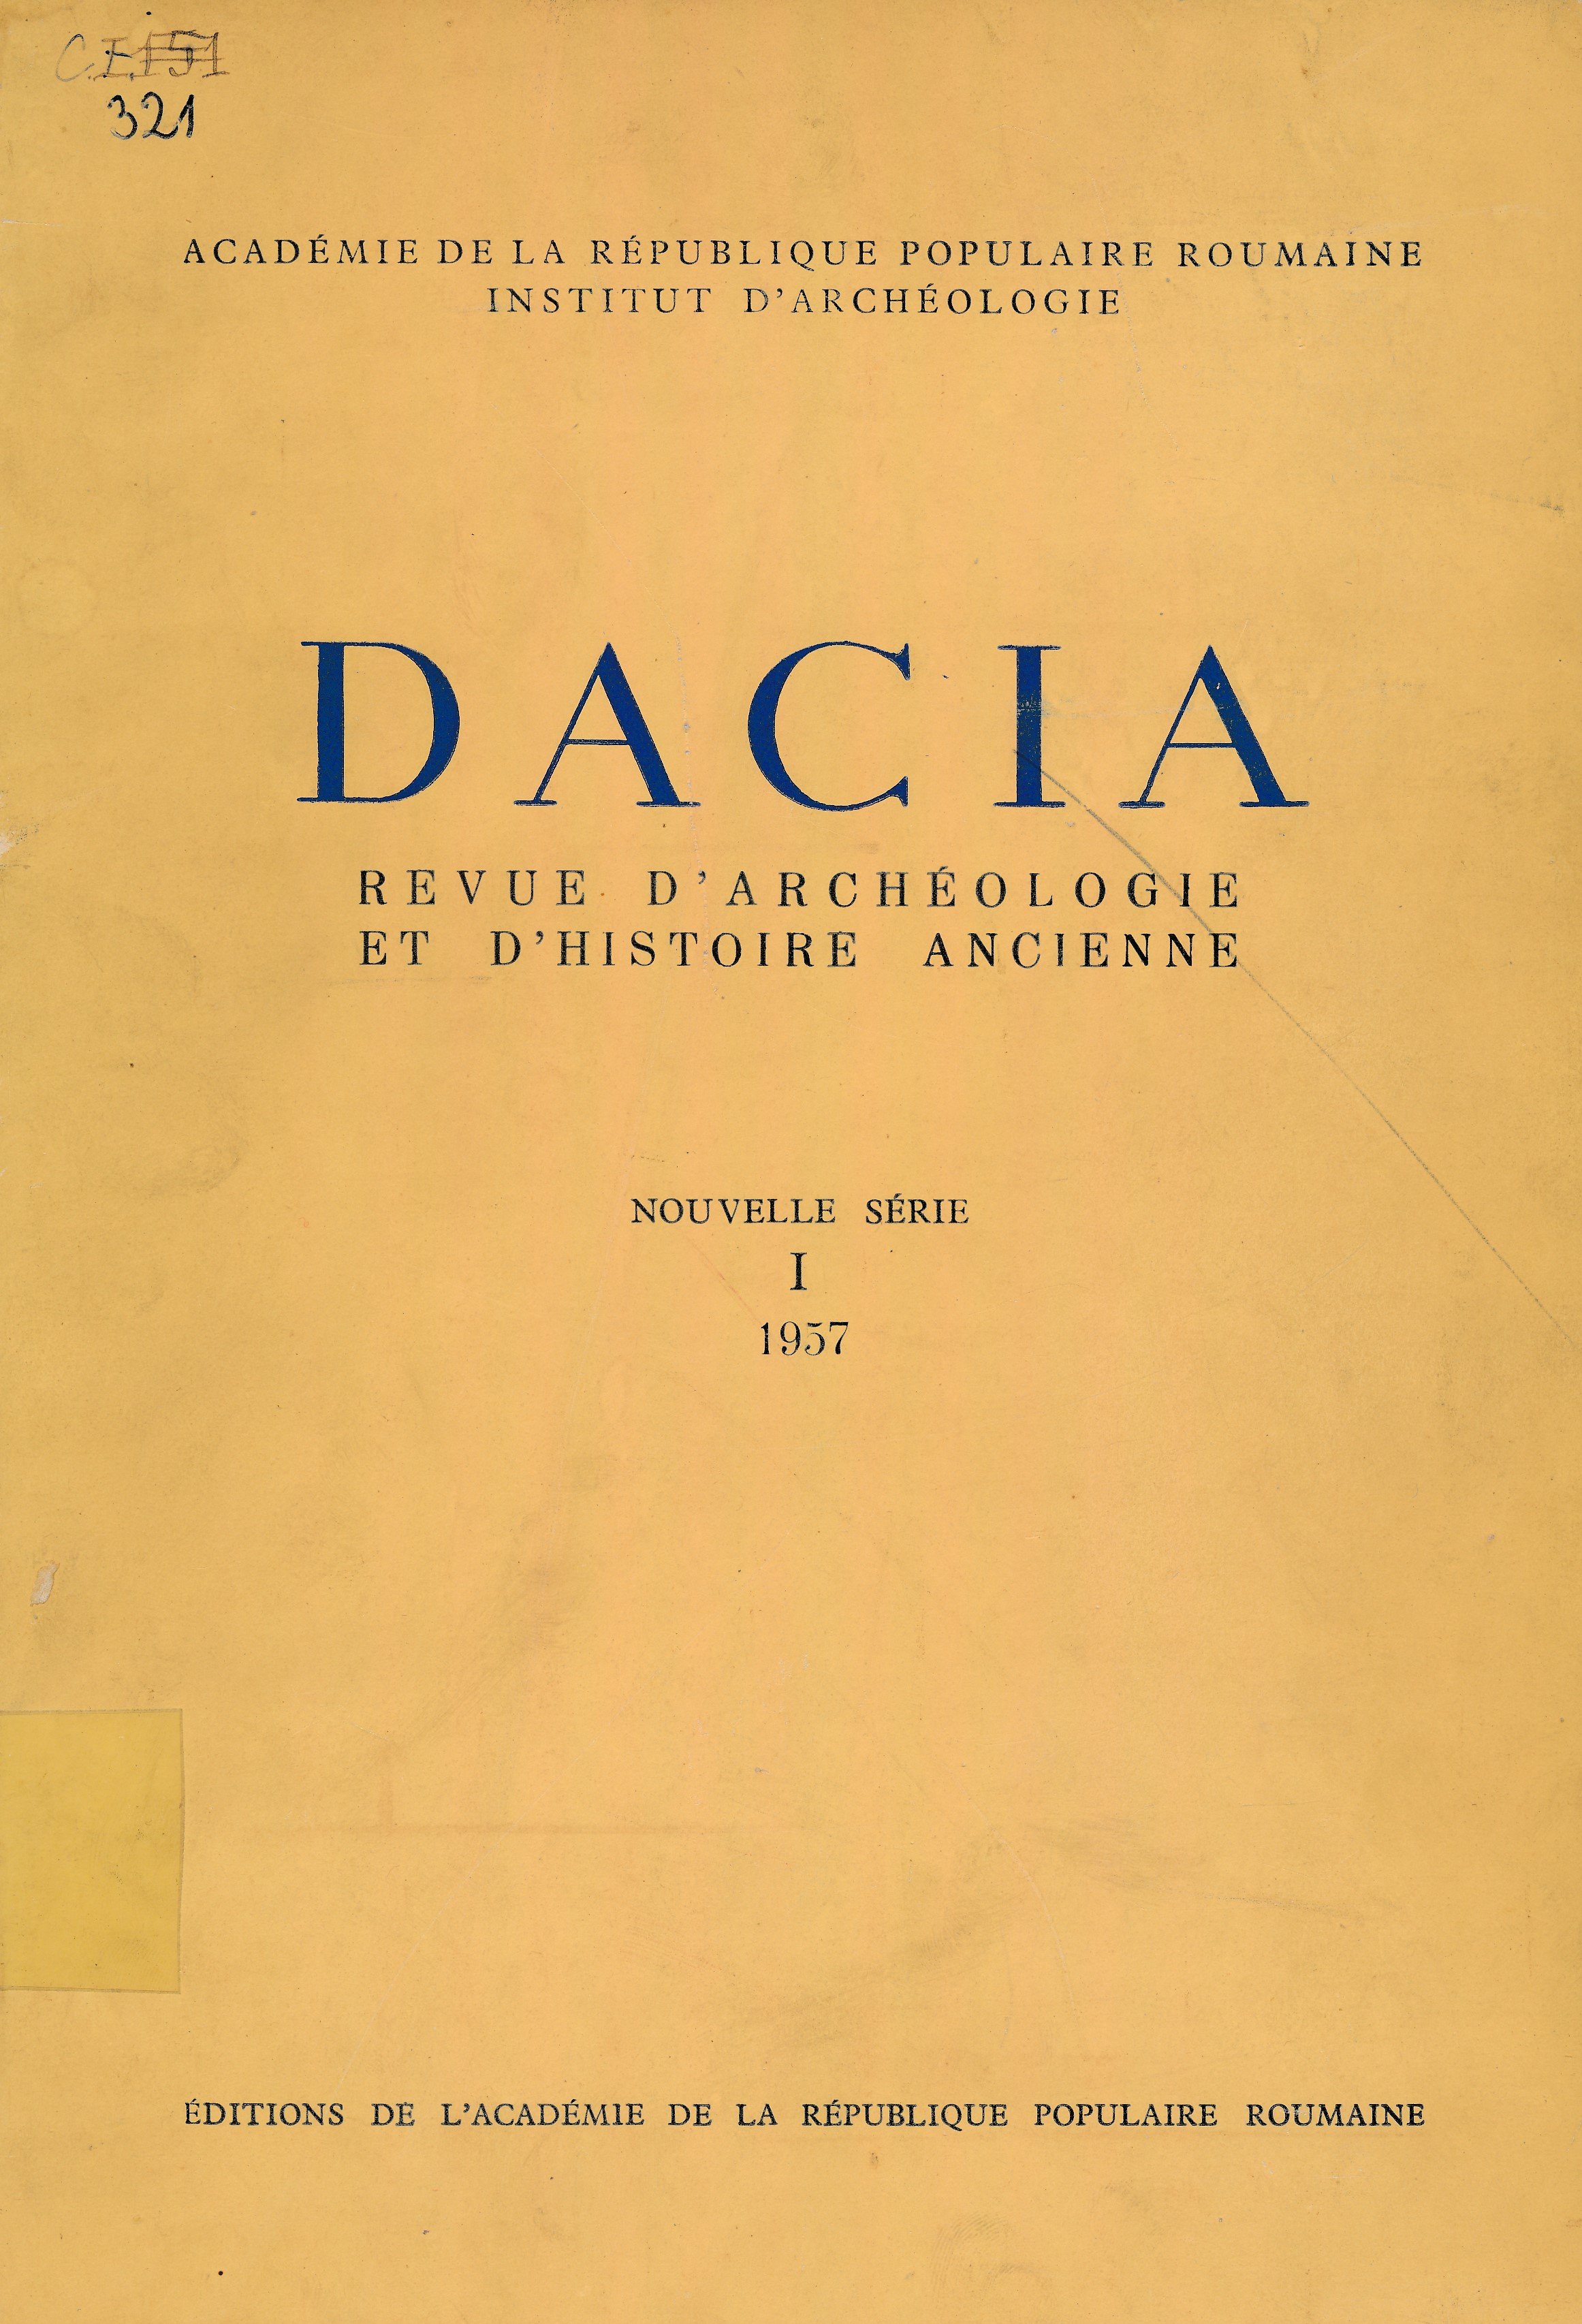 Dacia (Erkel Ferenc Múzeum és Könyvtár, Gyula CC BY-NC-SA)